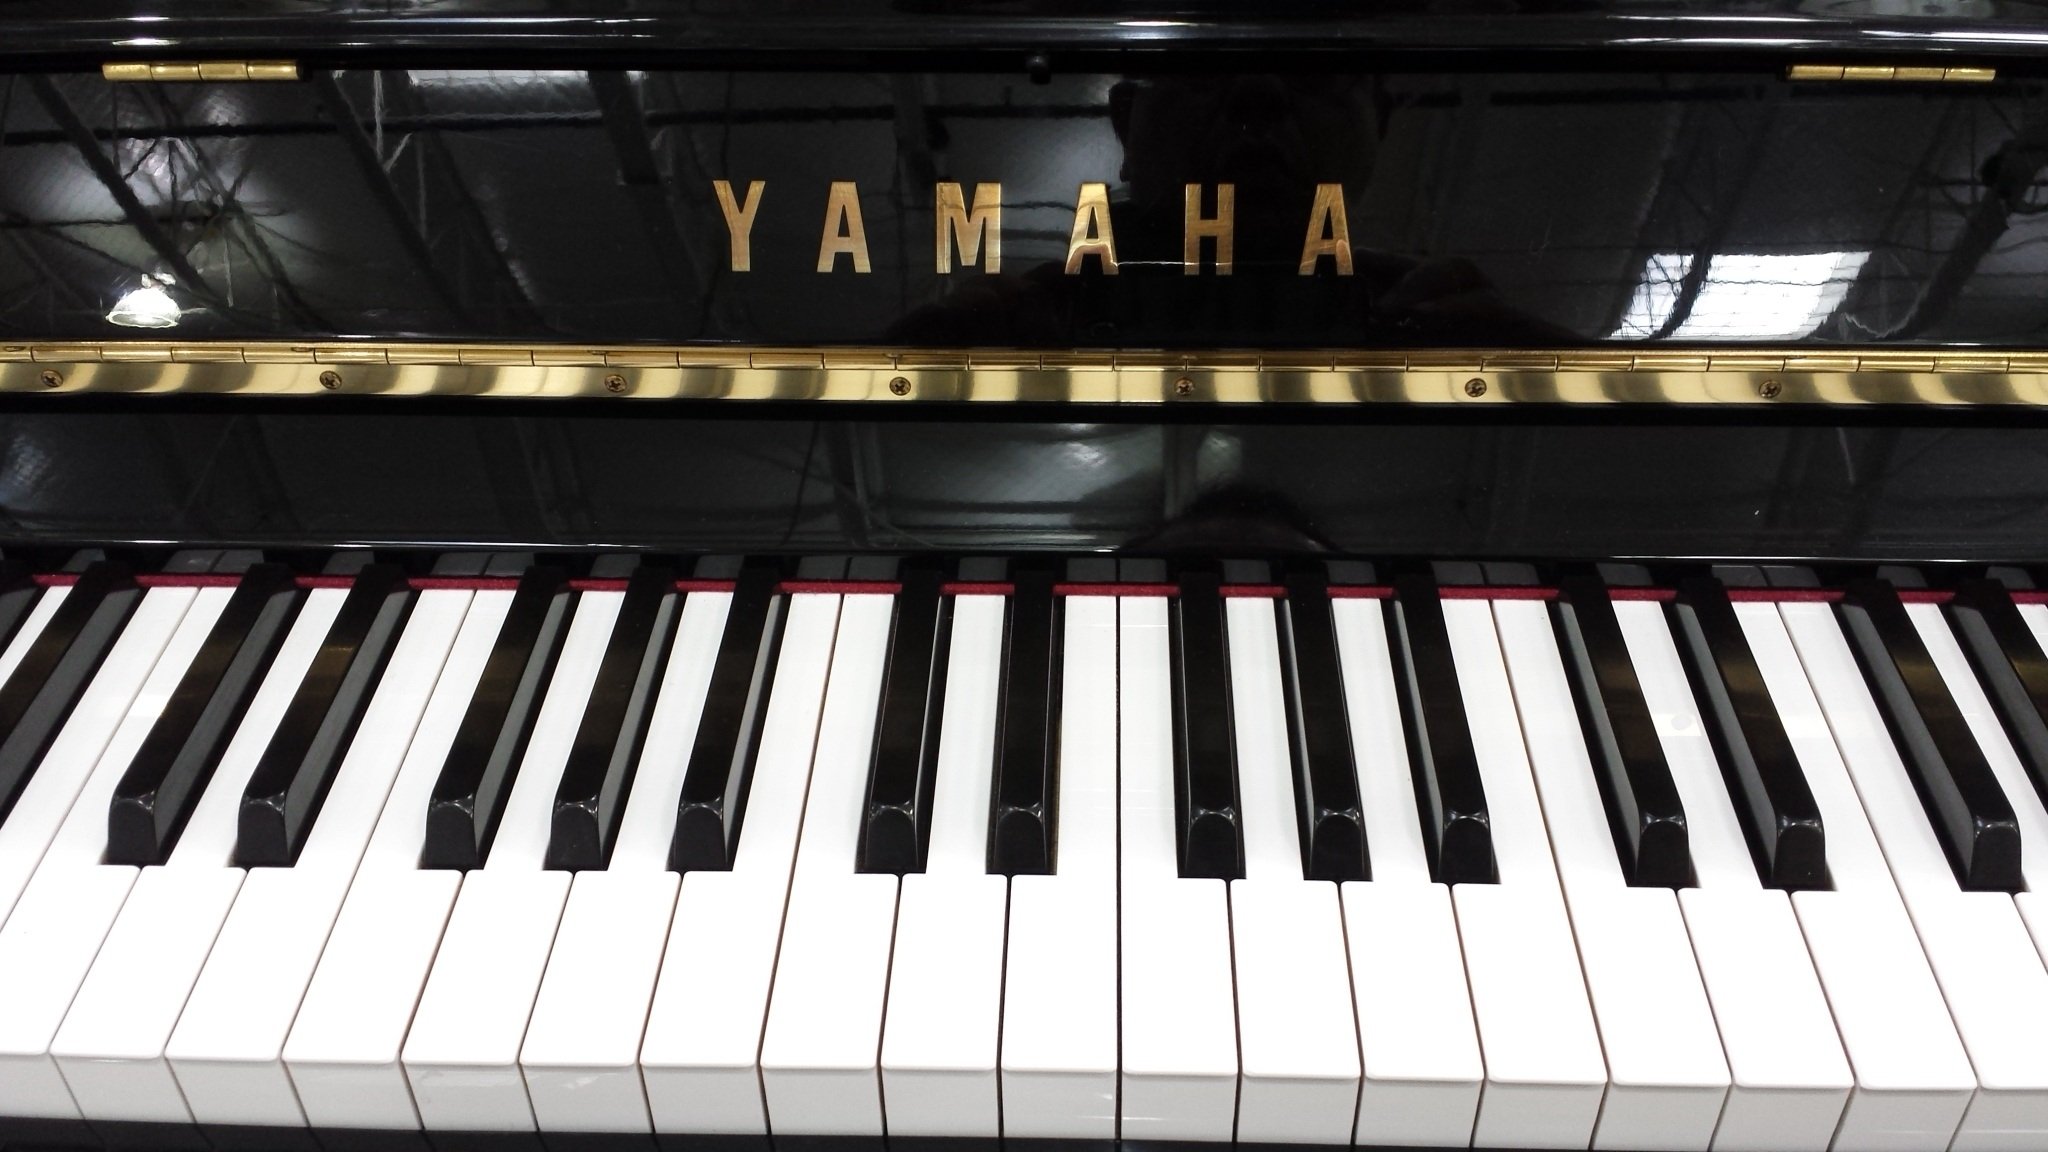 Клавиши классического пианино. Yamaha Calvinova пианино. Клавиши пианино. Фортепиано. Клавиатура рояля.